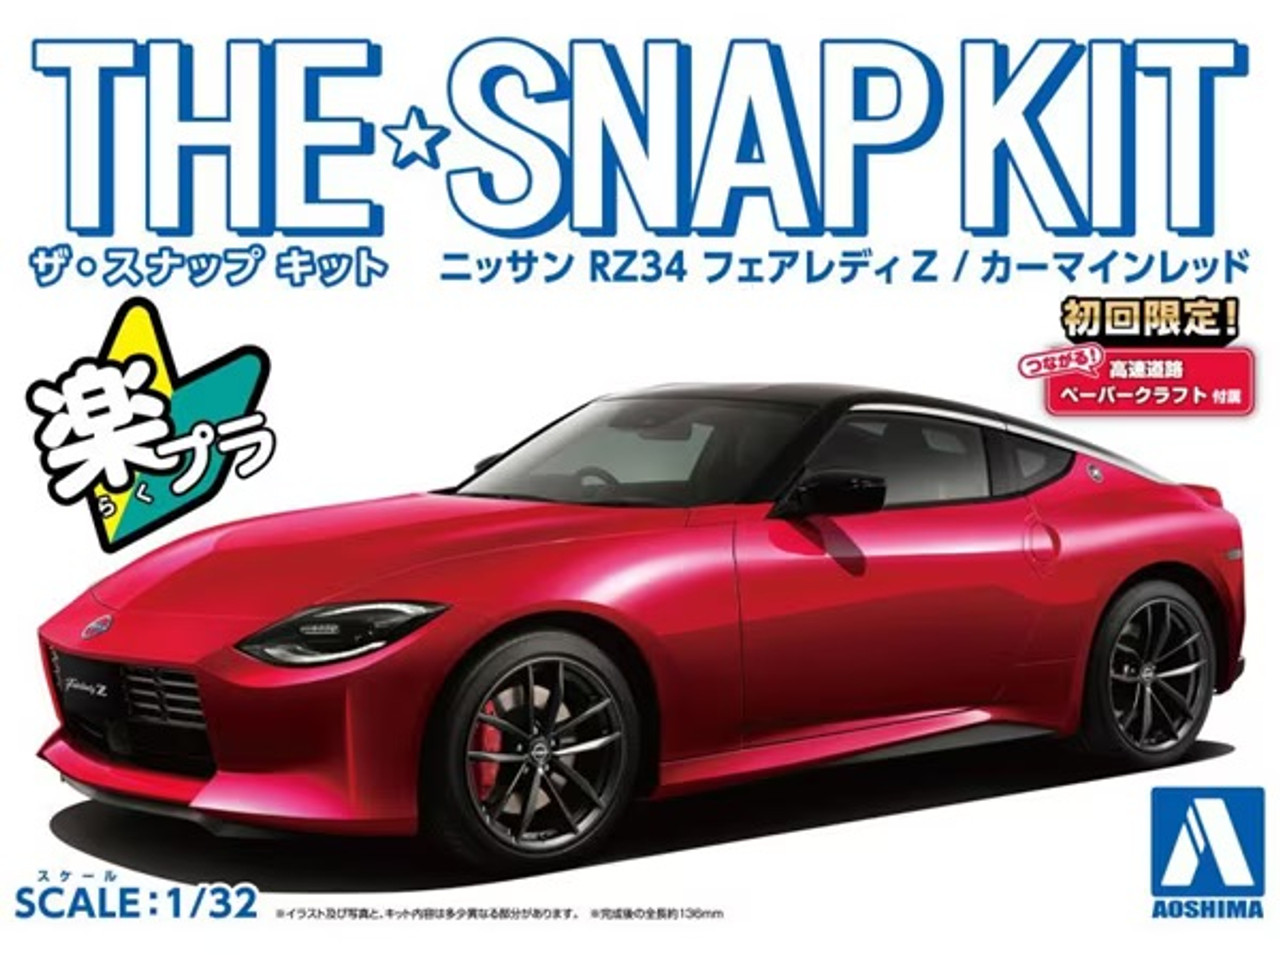 1/32 SNAP KIT #17-C Nissan RZ34 Fairlady (Carmine Red) - AOS06262